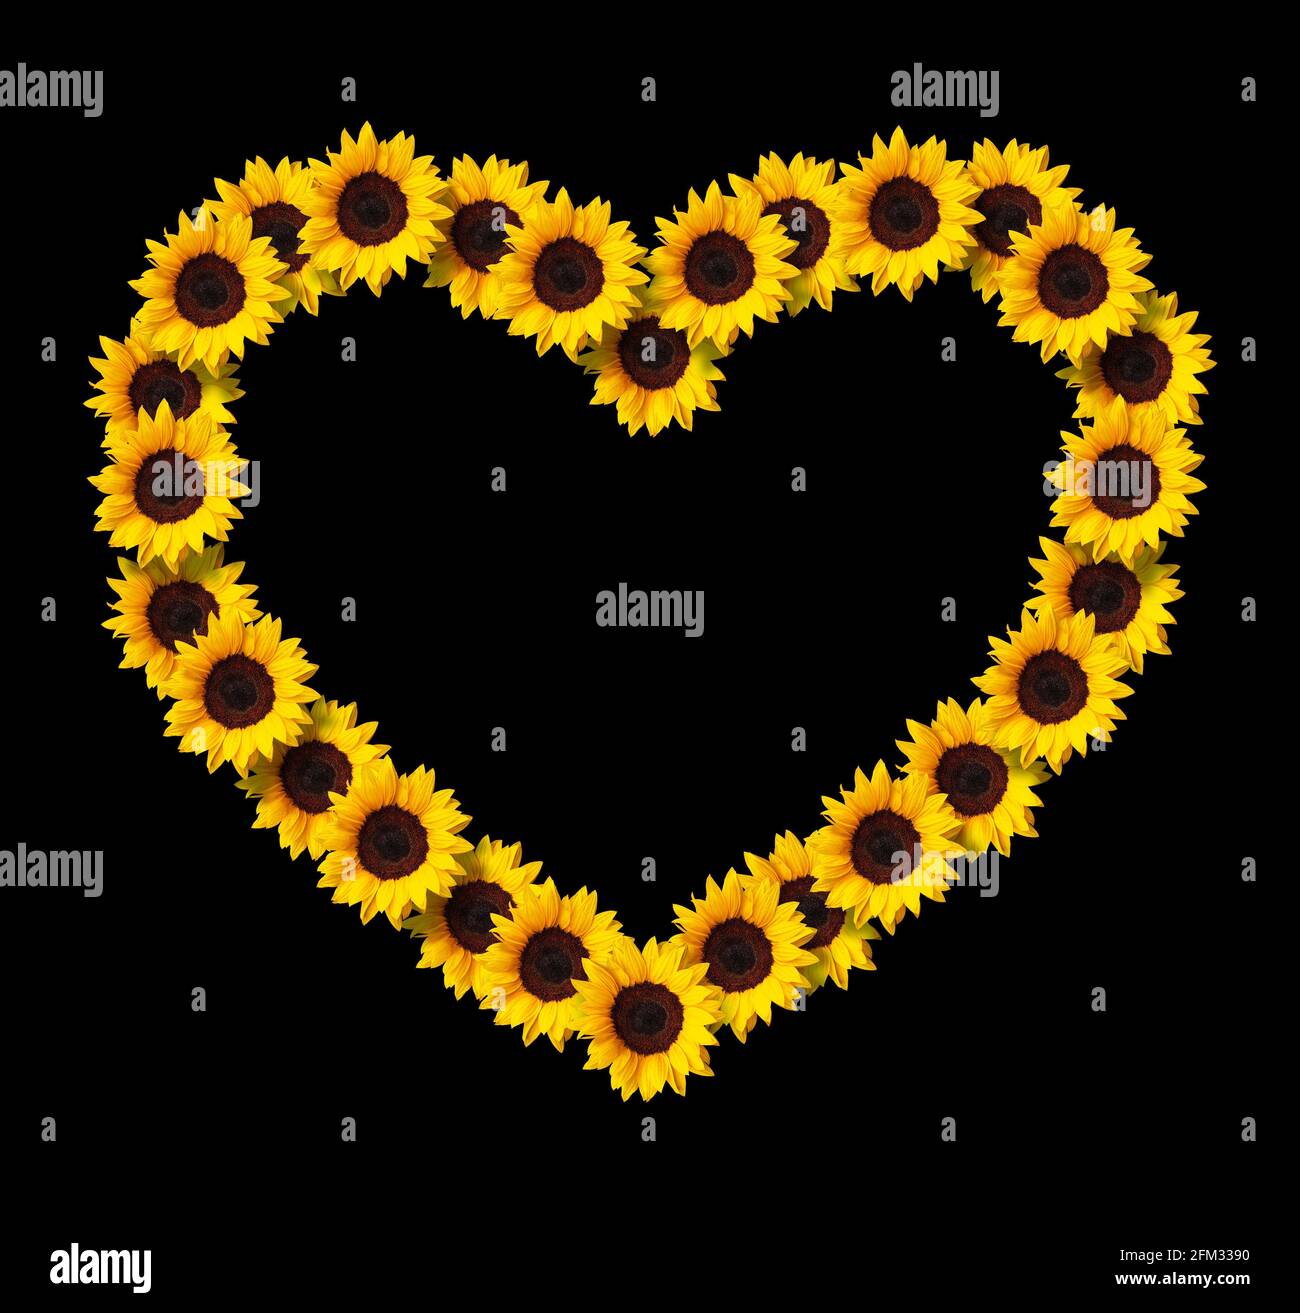 Herzförmiger Rahmen aus gelben Sonnenblumen Blumen isoliert auf schwarzem Hintergrund. Design-Element für Love Concepts Designs. Ideal für Muttertag und Stockfoto